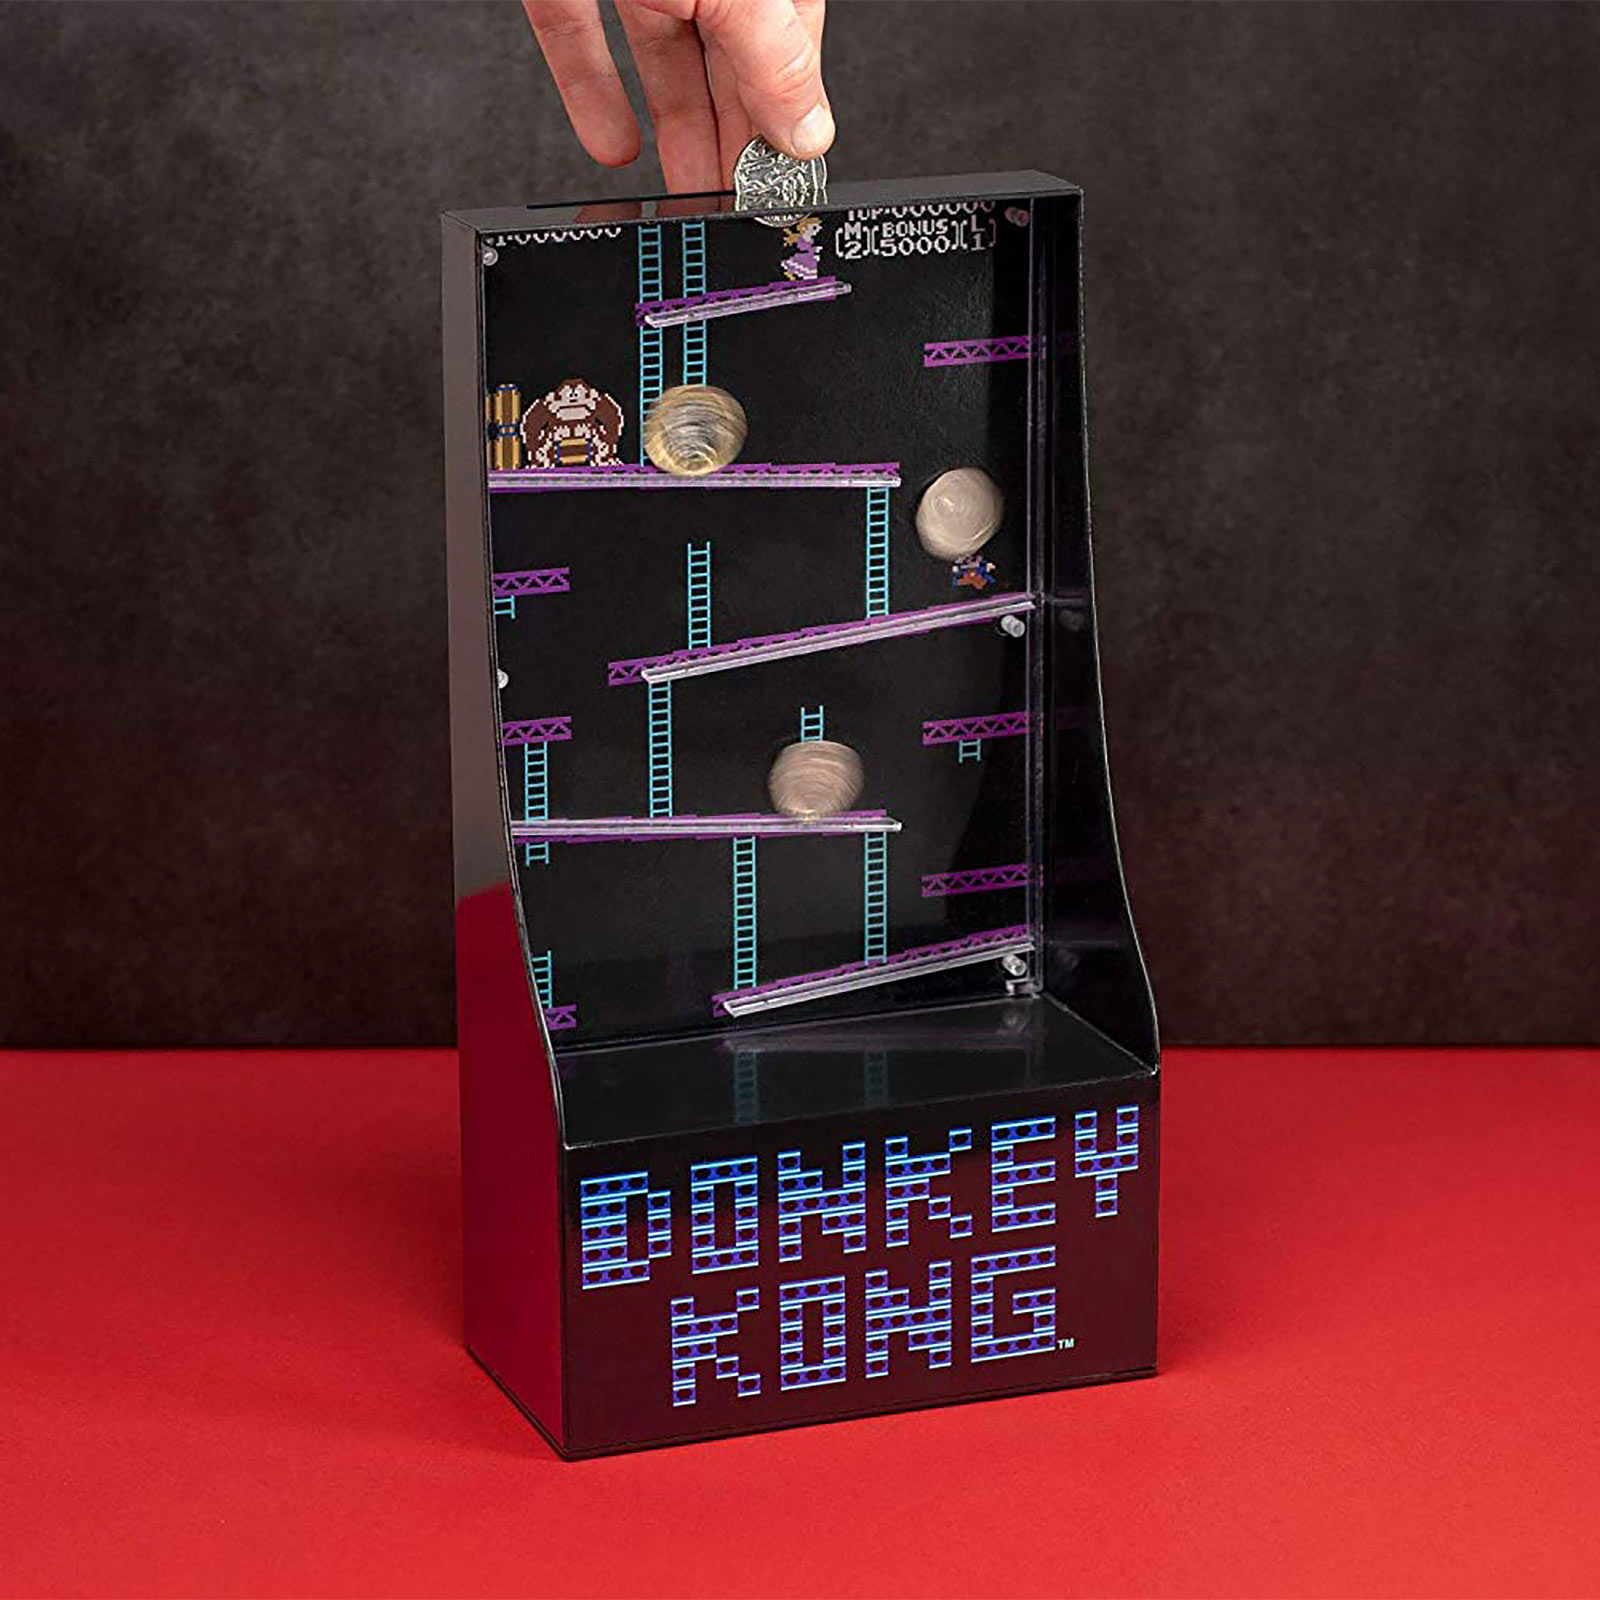 Donkey Kong - Arcade Game Spardose